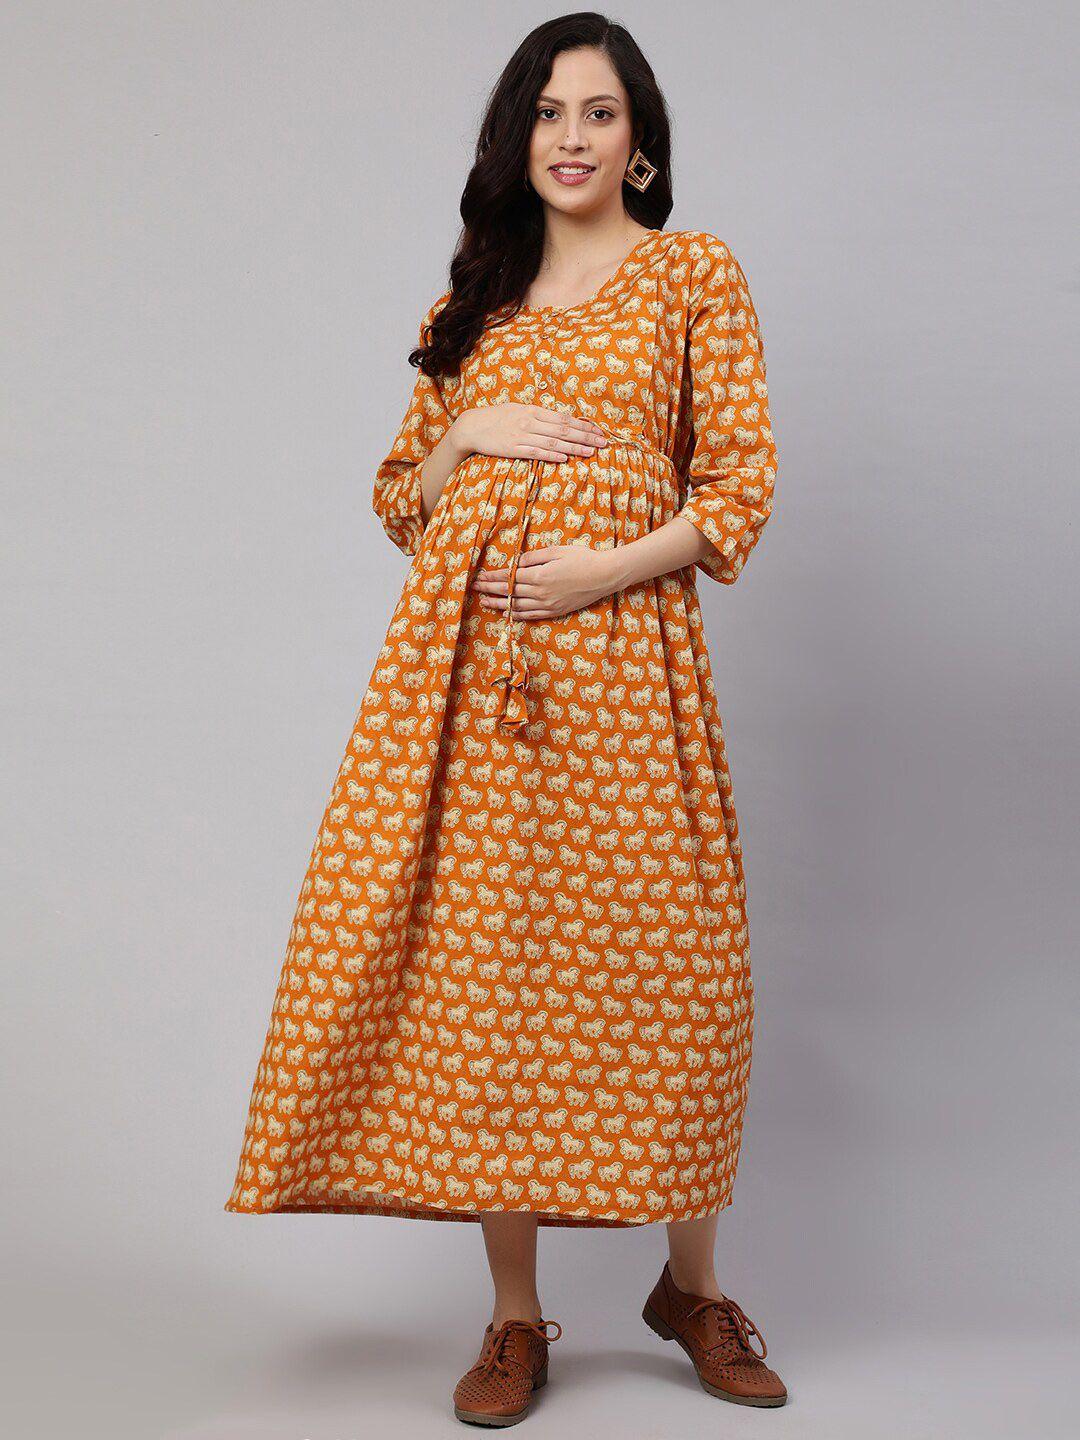 nayo-yellow-ethnic-motifs-print-maternity-maxi-dress